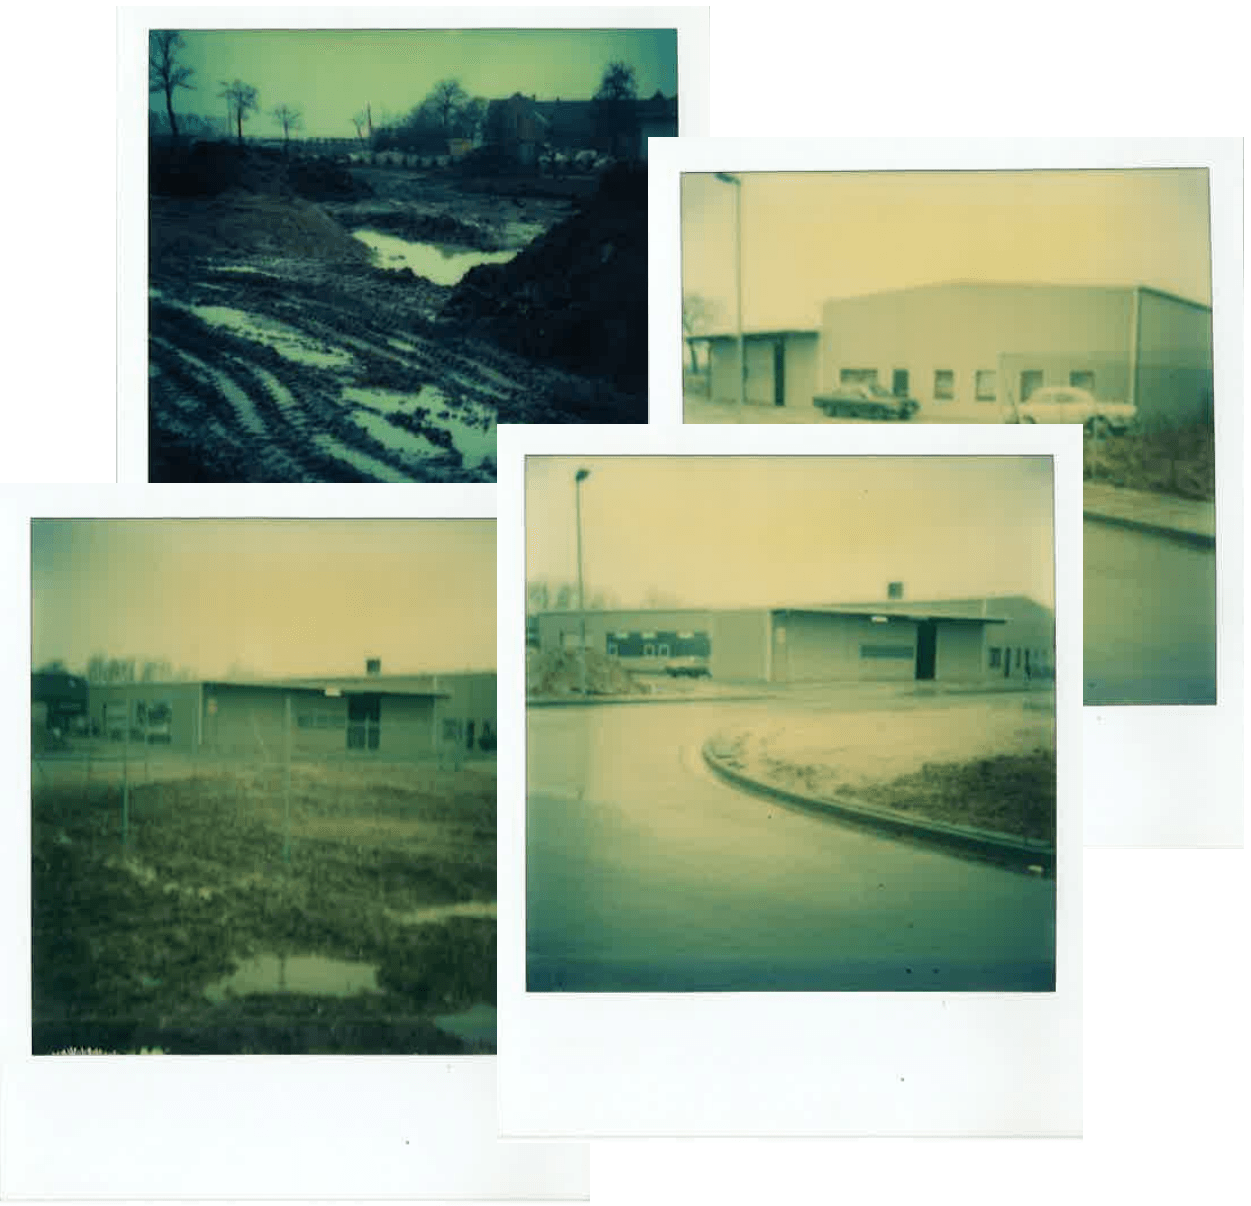 Vier Polaroid Bilder, die den Aufbau unseres Betriebsgeländes dokumentieren.  Das erste Bild zeigt das unbebaute Gelände. Das Bild links unten zeigt den Anfang der Bebauung. Die beiden rechten Bilder zeigen das Gelände Ausunterschiedlichen Perspektiven. Oben rechts zeigt das Hauptgebäude. Unten rechts zeigt das ehemalige Gaslager.